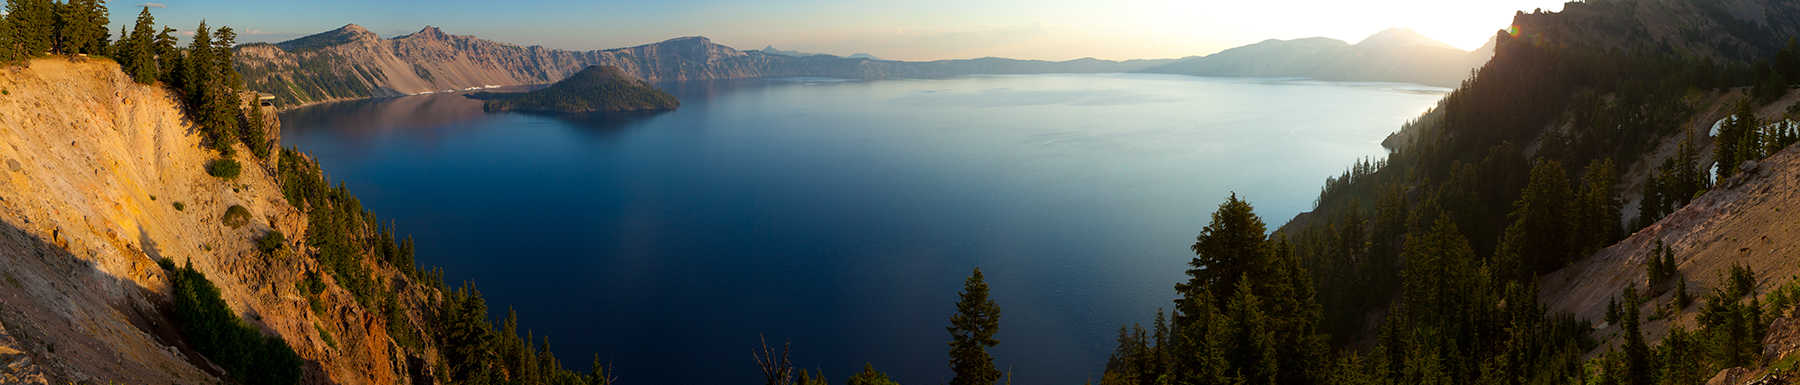 Vista panorámica de las montañas y el lago de abajo